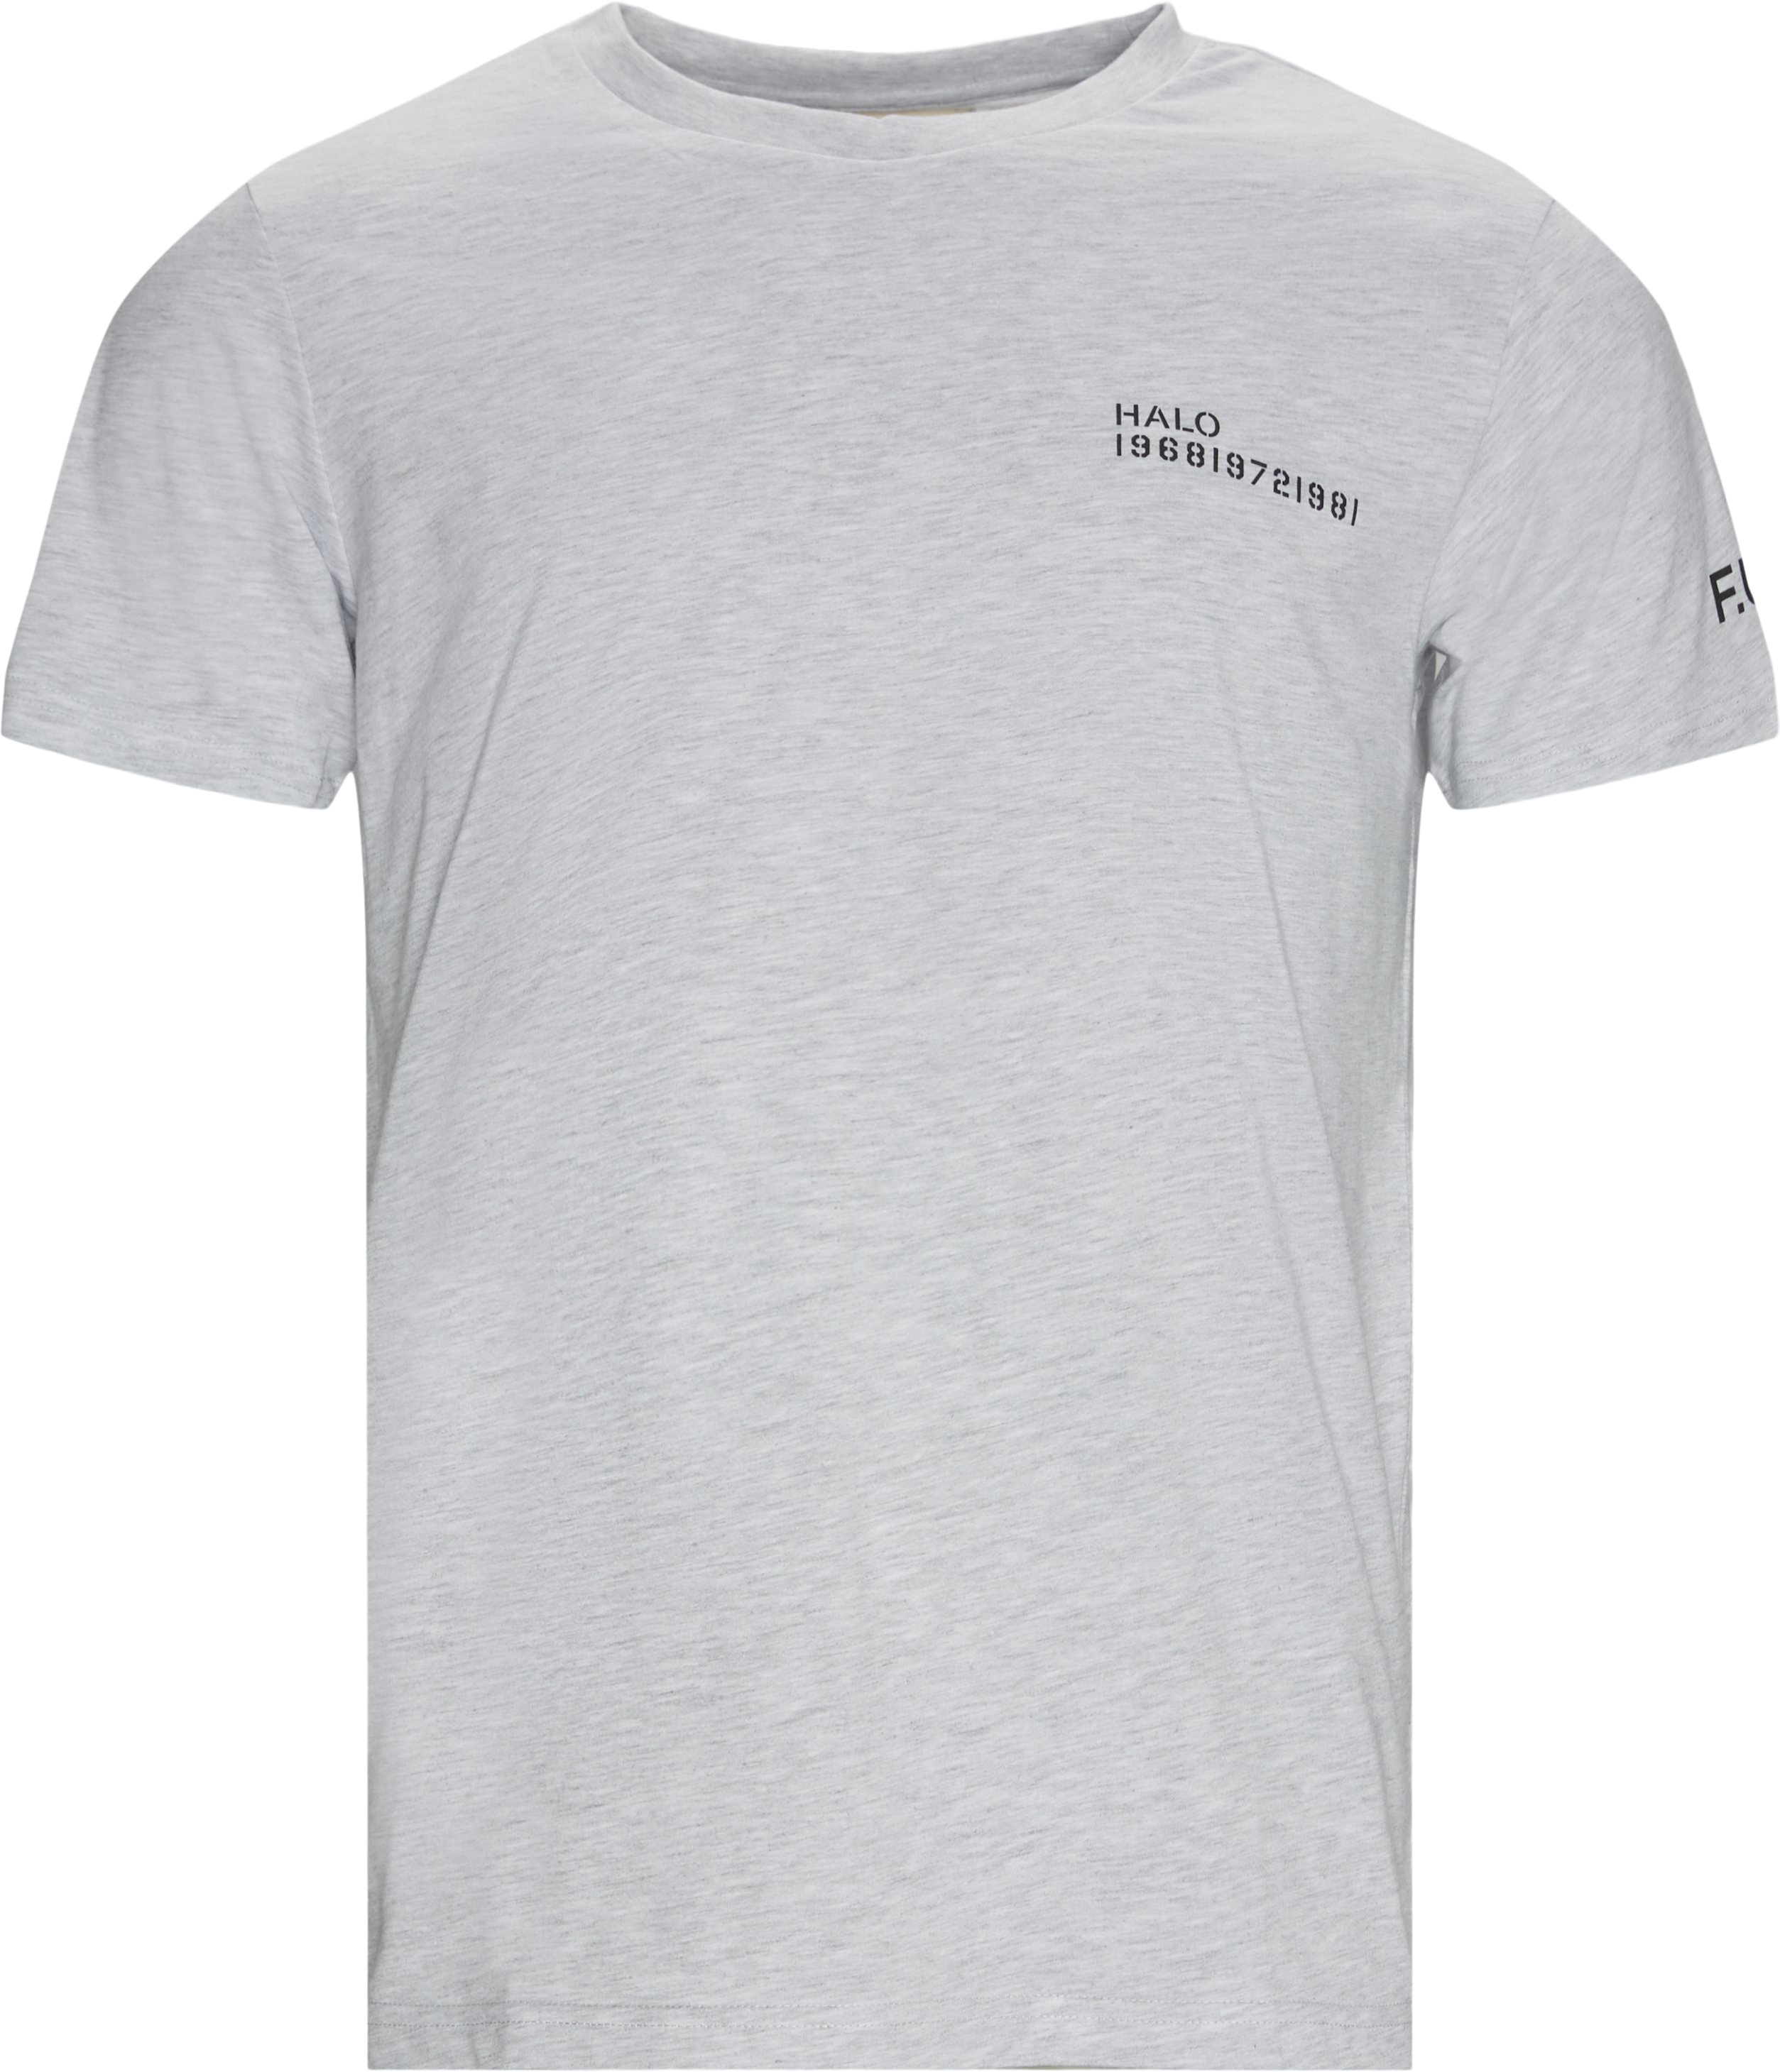 Cotton Tee  - T-shirts - Regular fit - Grå